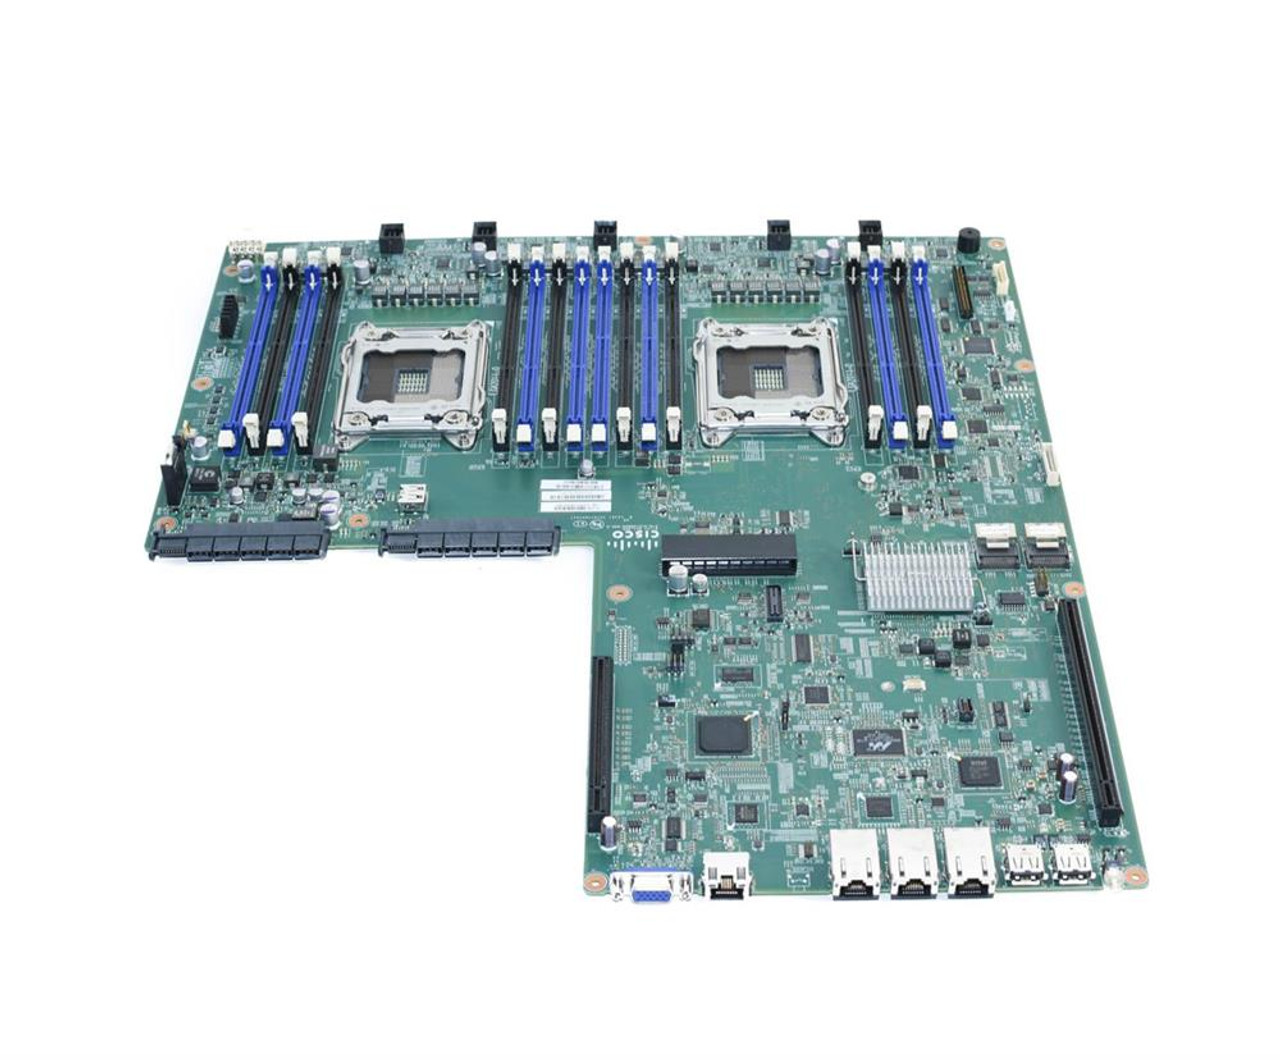 74-10442-01 Cisco System Board (Motherboard) for UCS C220 M3 Server (Refurbished)